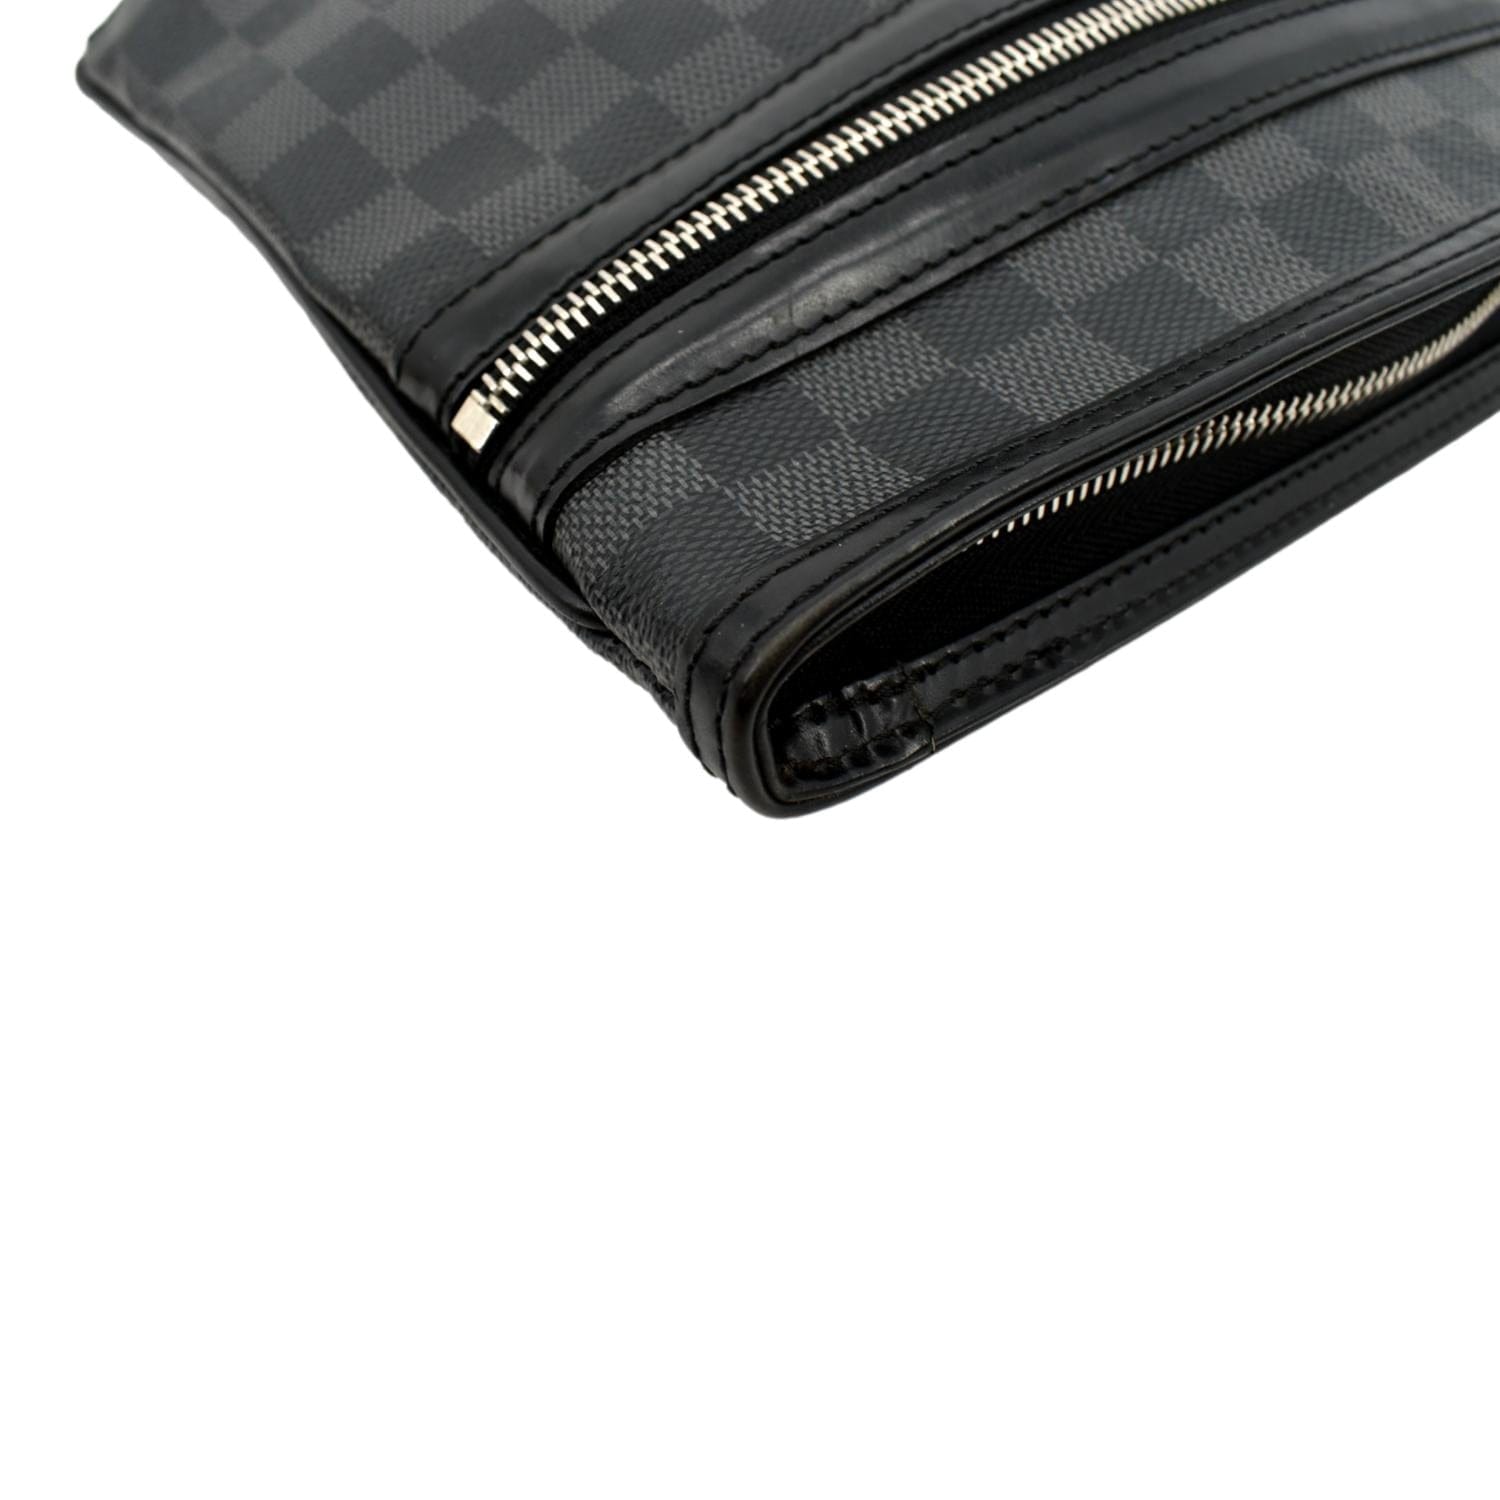 Louis Vuitton Bosphore Pochette Damier - ShopStyle Shoulder Bags